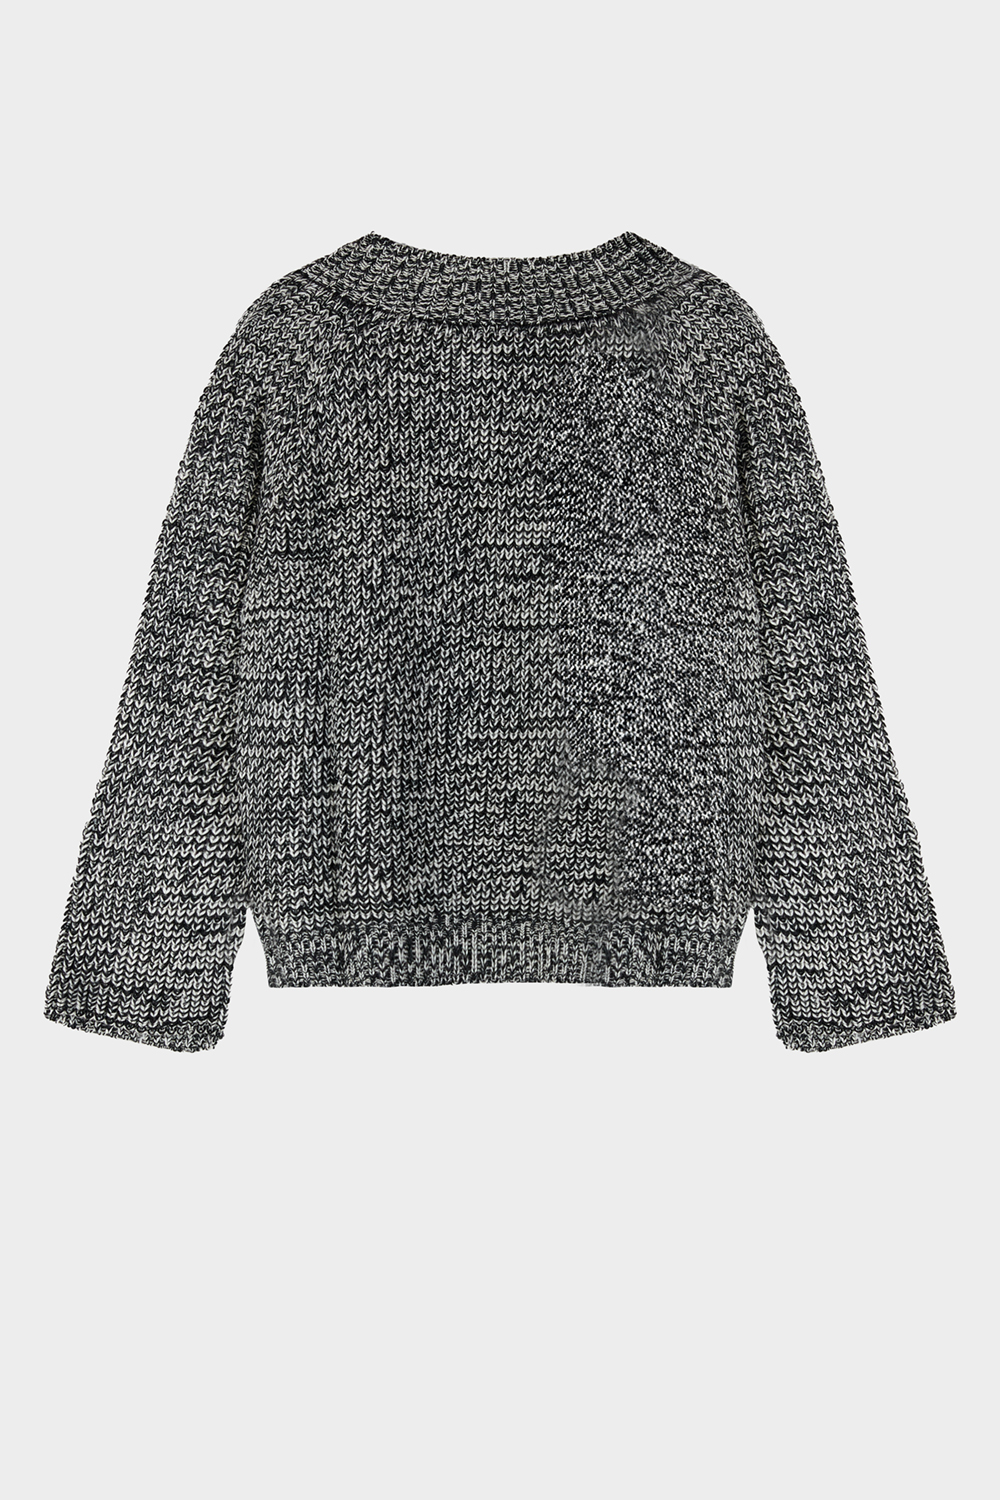 sweater peonia crudo_negro 2.jpg_1000x1500_72